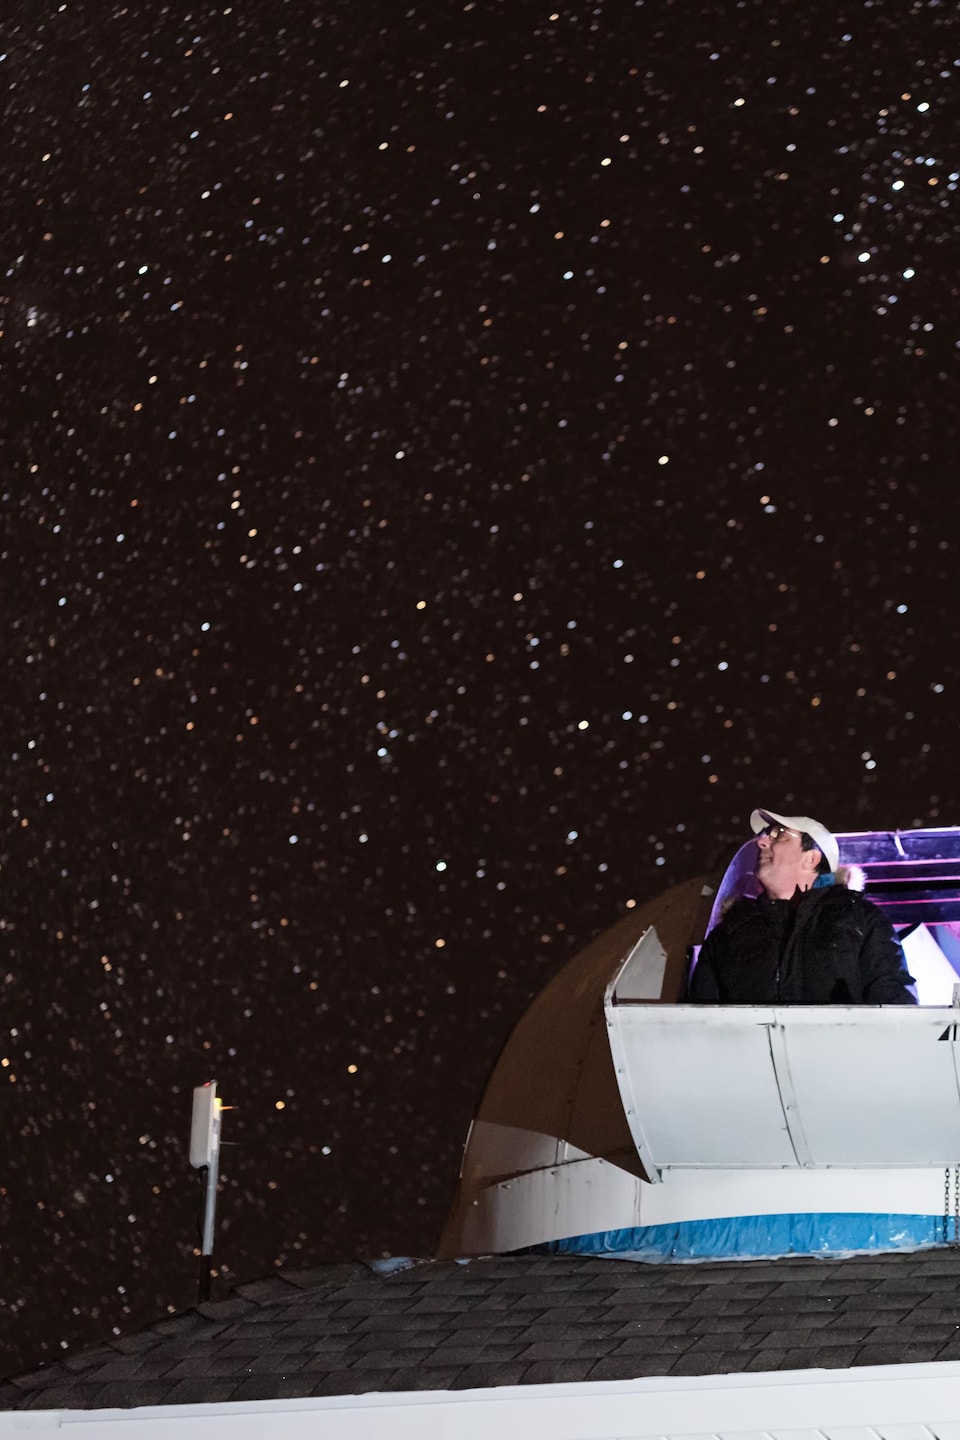 Tim Doucette regarde le ciel étoilé à partir de son observatoire.